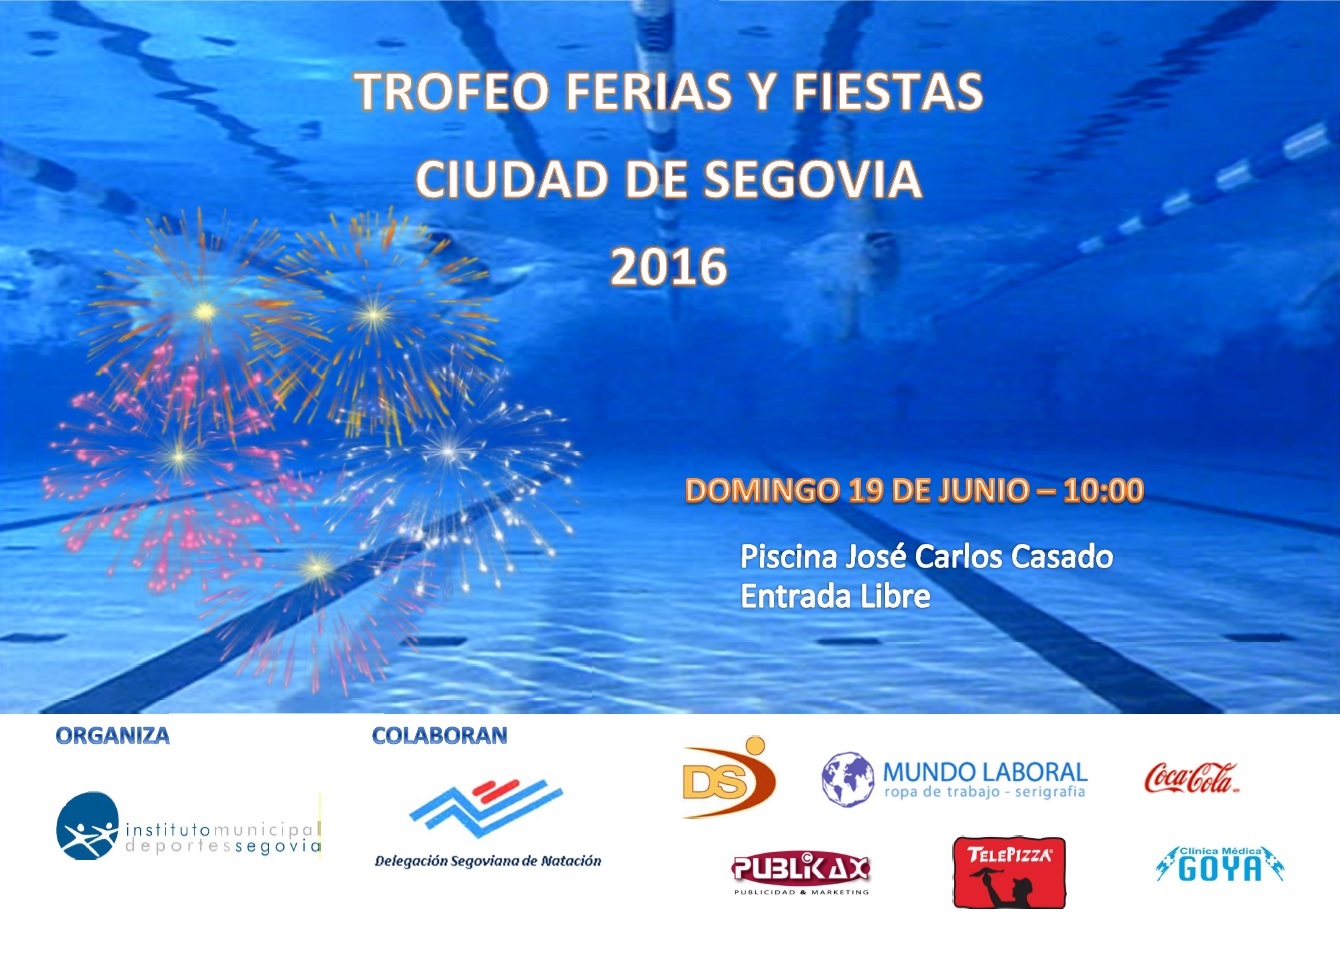 Trofeo Ferias y Fiestas de Natación “Ciudad de Segovia” 2016